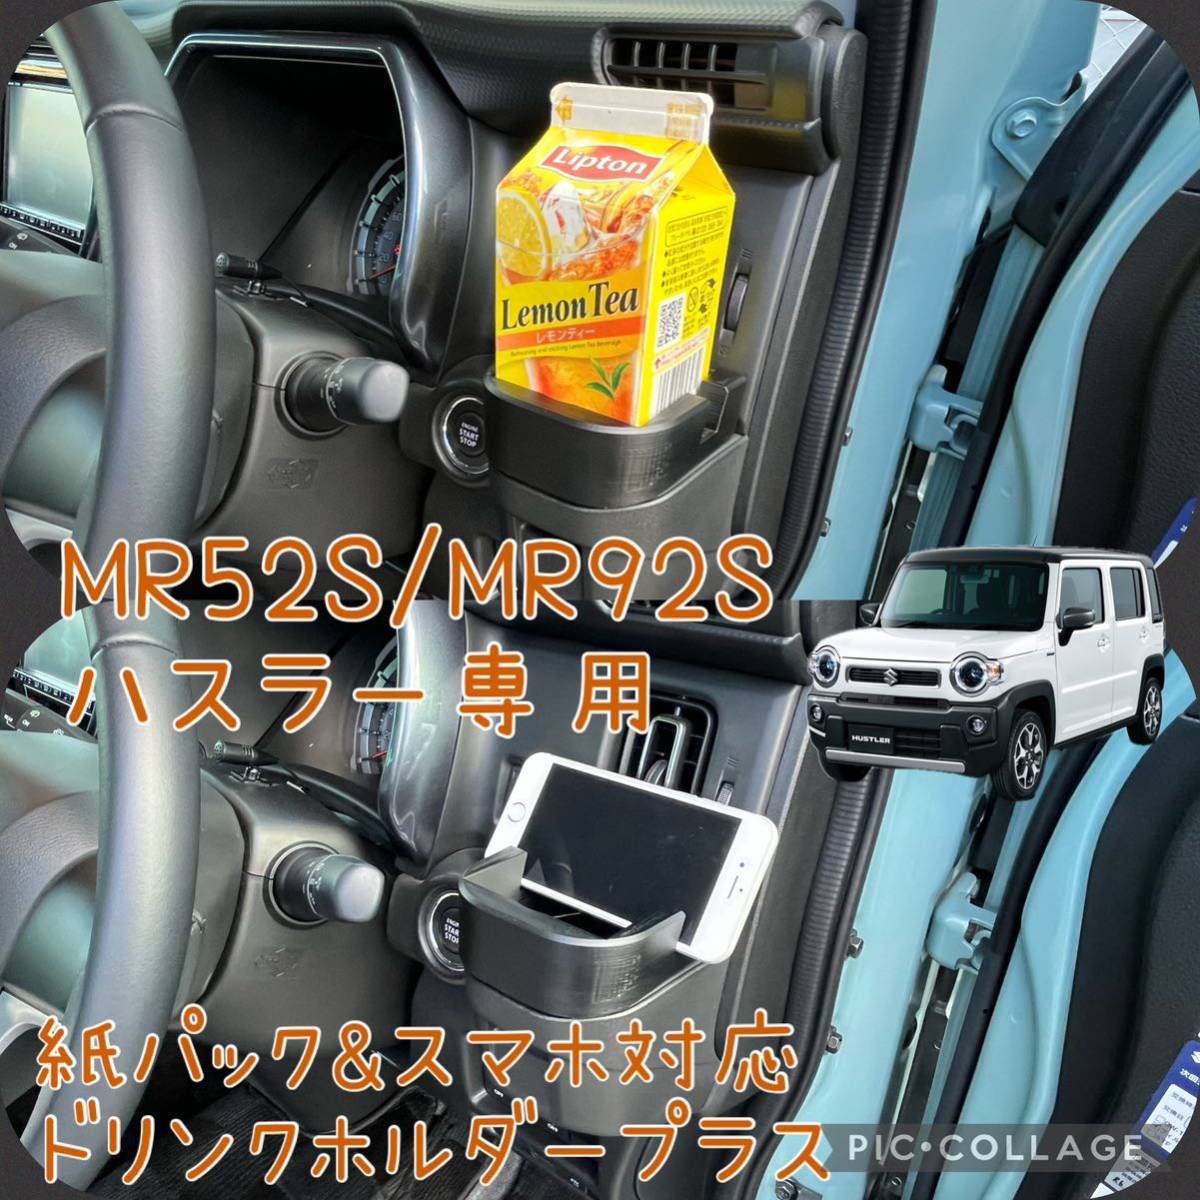 MR52S/MR92S Hustler специальный бумага упаковка & смартфон соответствует держатель для напитков плюс a